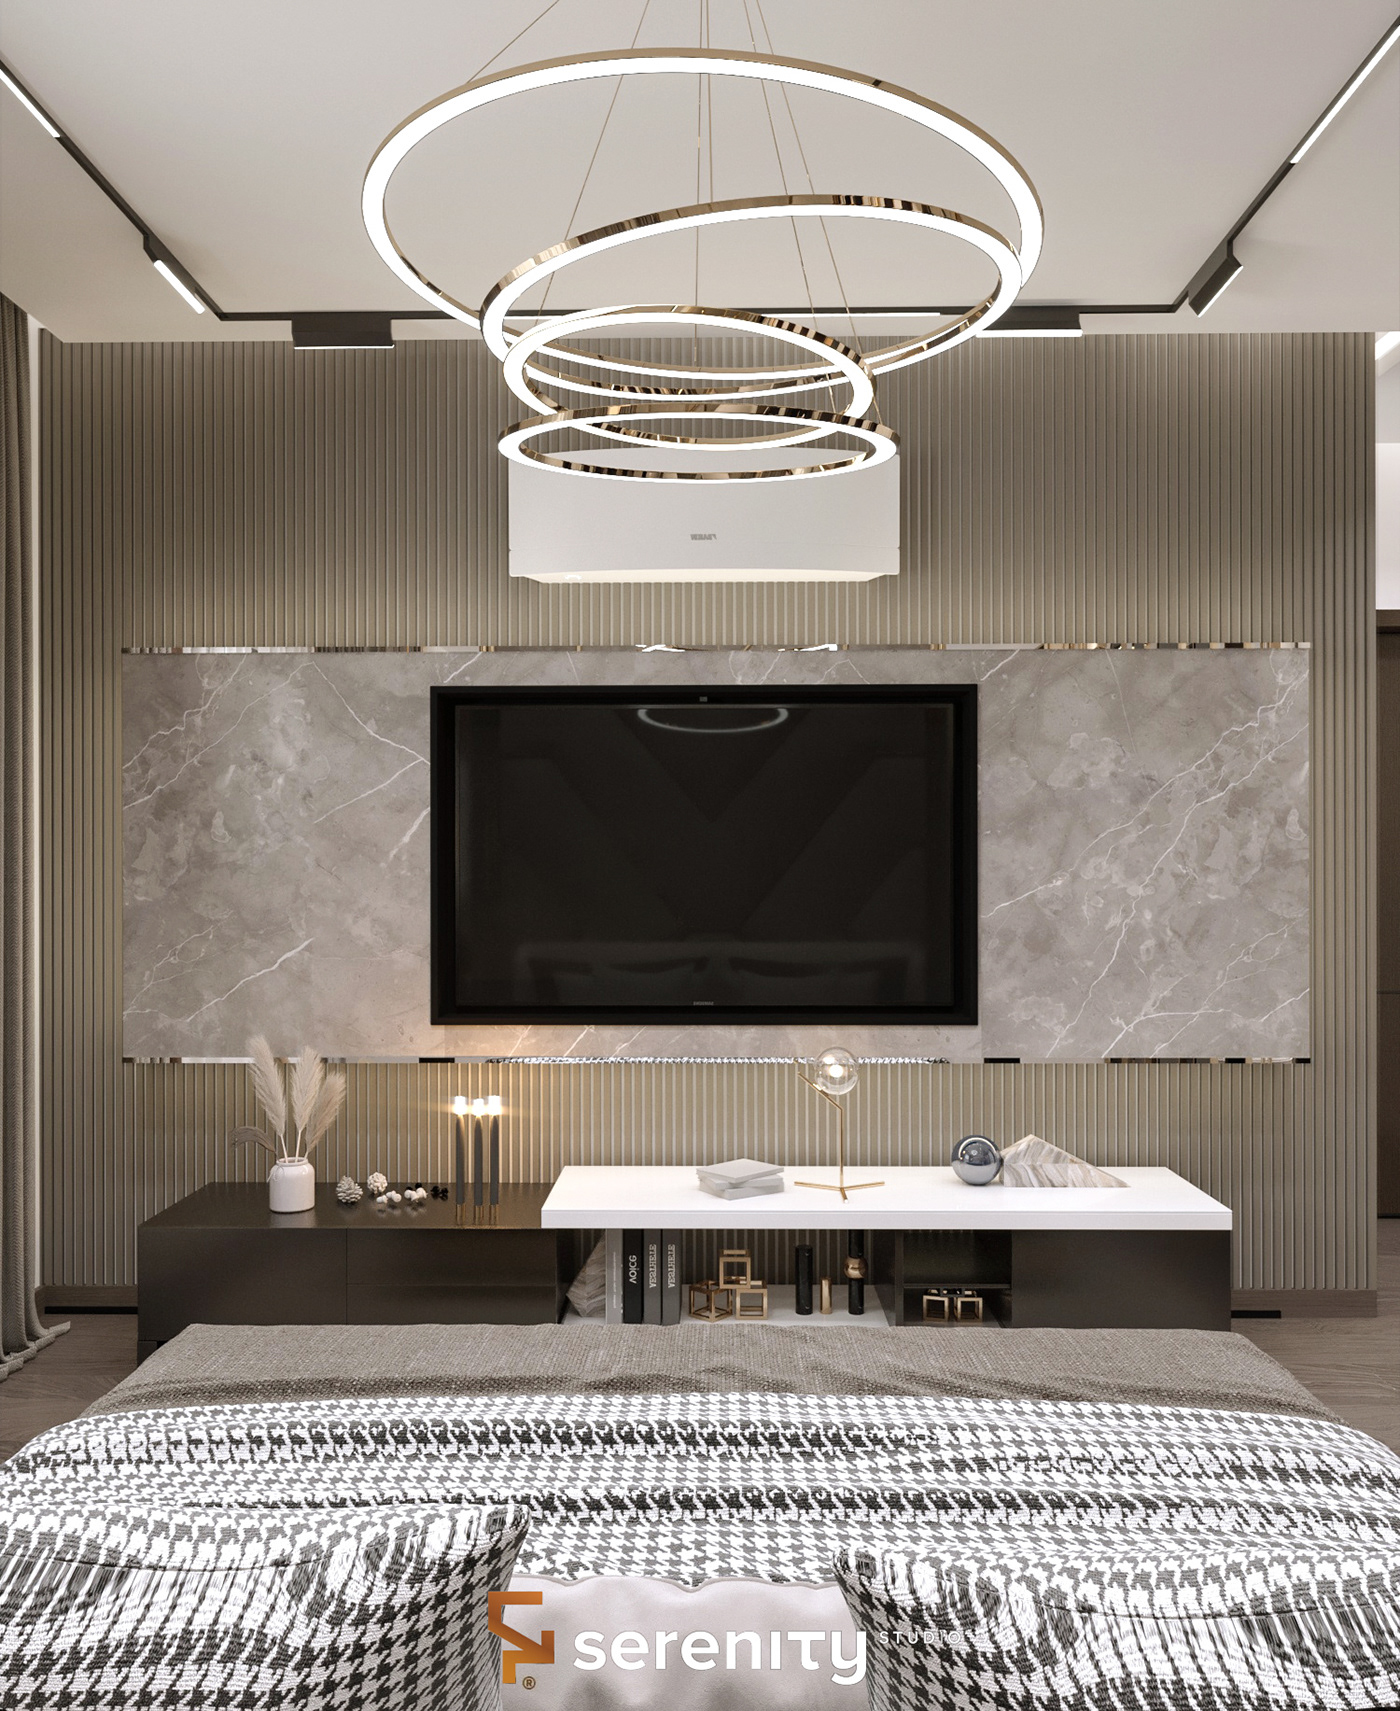 3ds max architecture corona interior design  master bedroom modern visualization